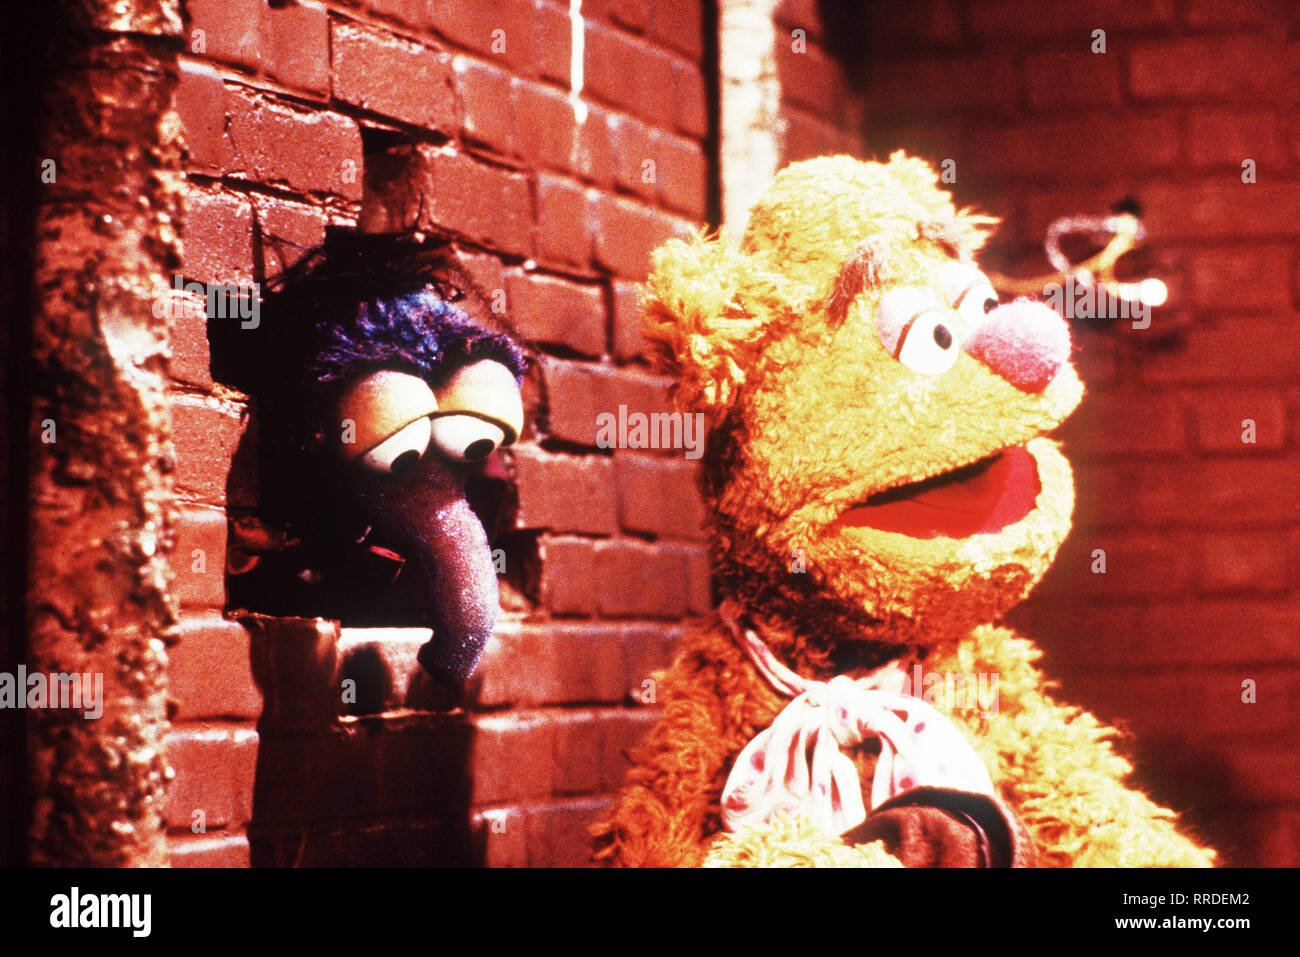 Die Muppet Show aka. The Muppet Show, TV Serie 1976-1981 Macher: Jim Henson, Fozzie Bear und Gonzo / Überschrift: Die Muppet Show aka. The Muppet Show, TV Serie 1976-1981 Stock Photo